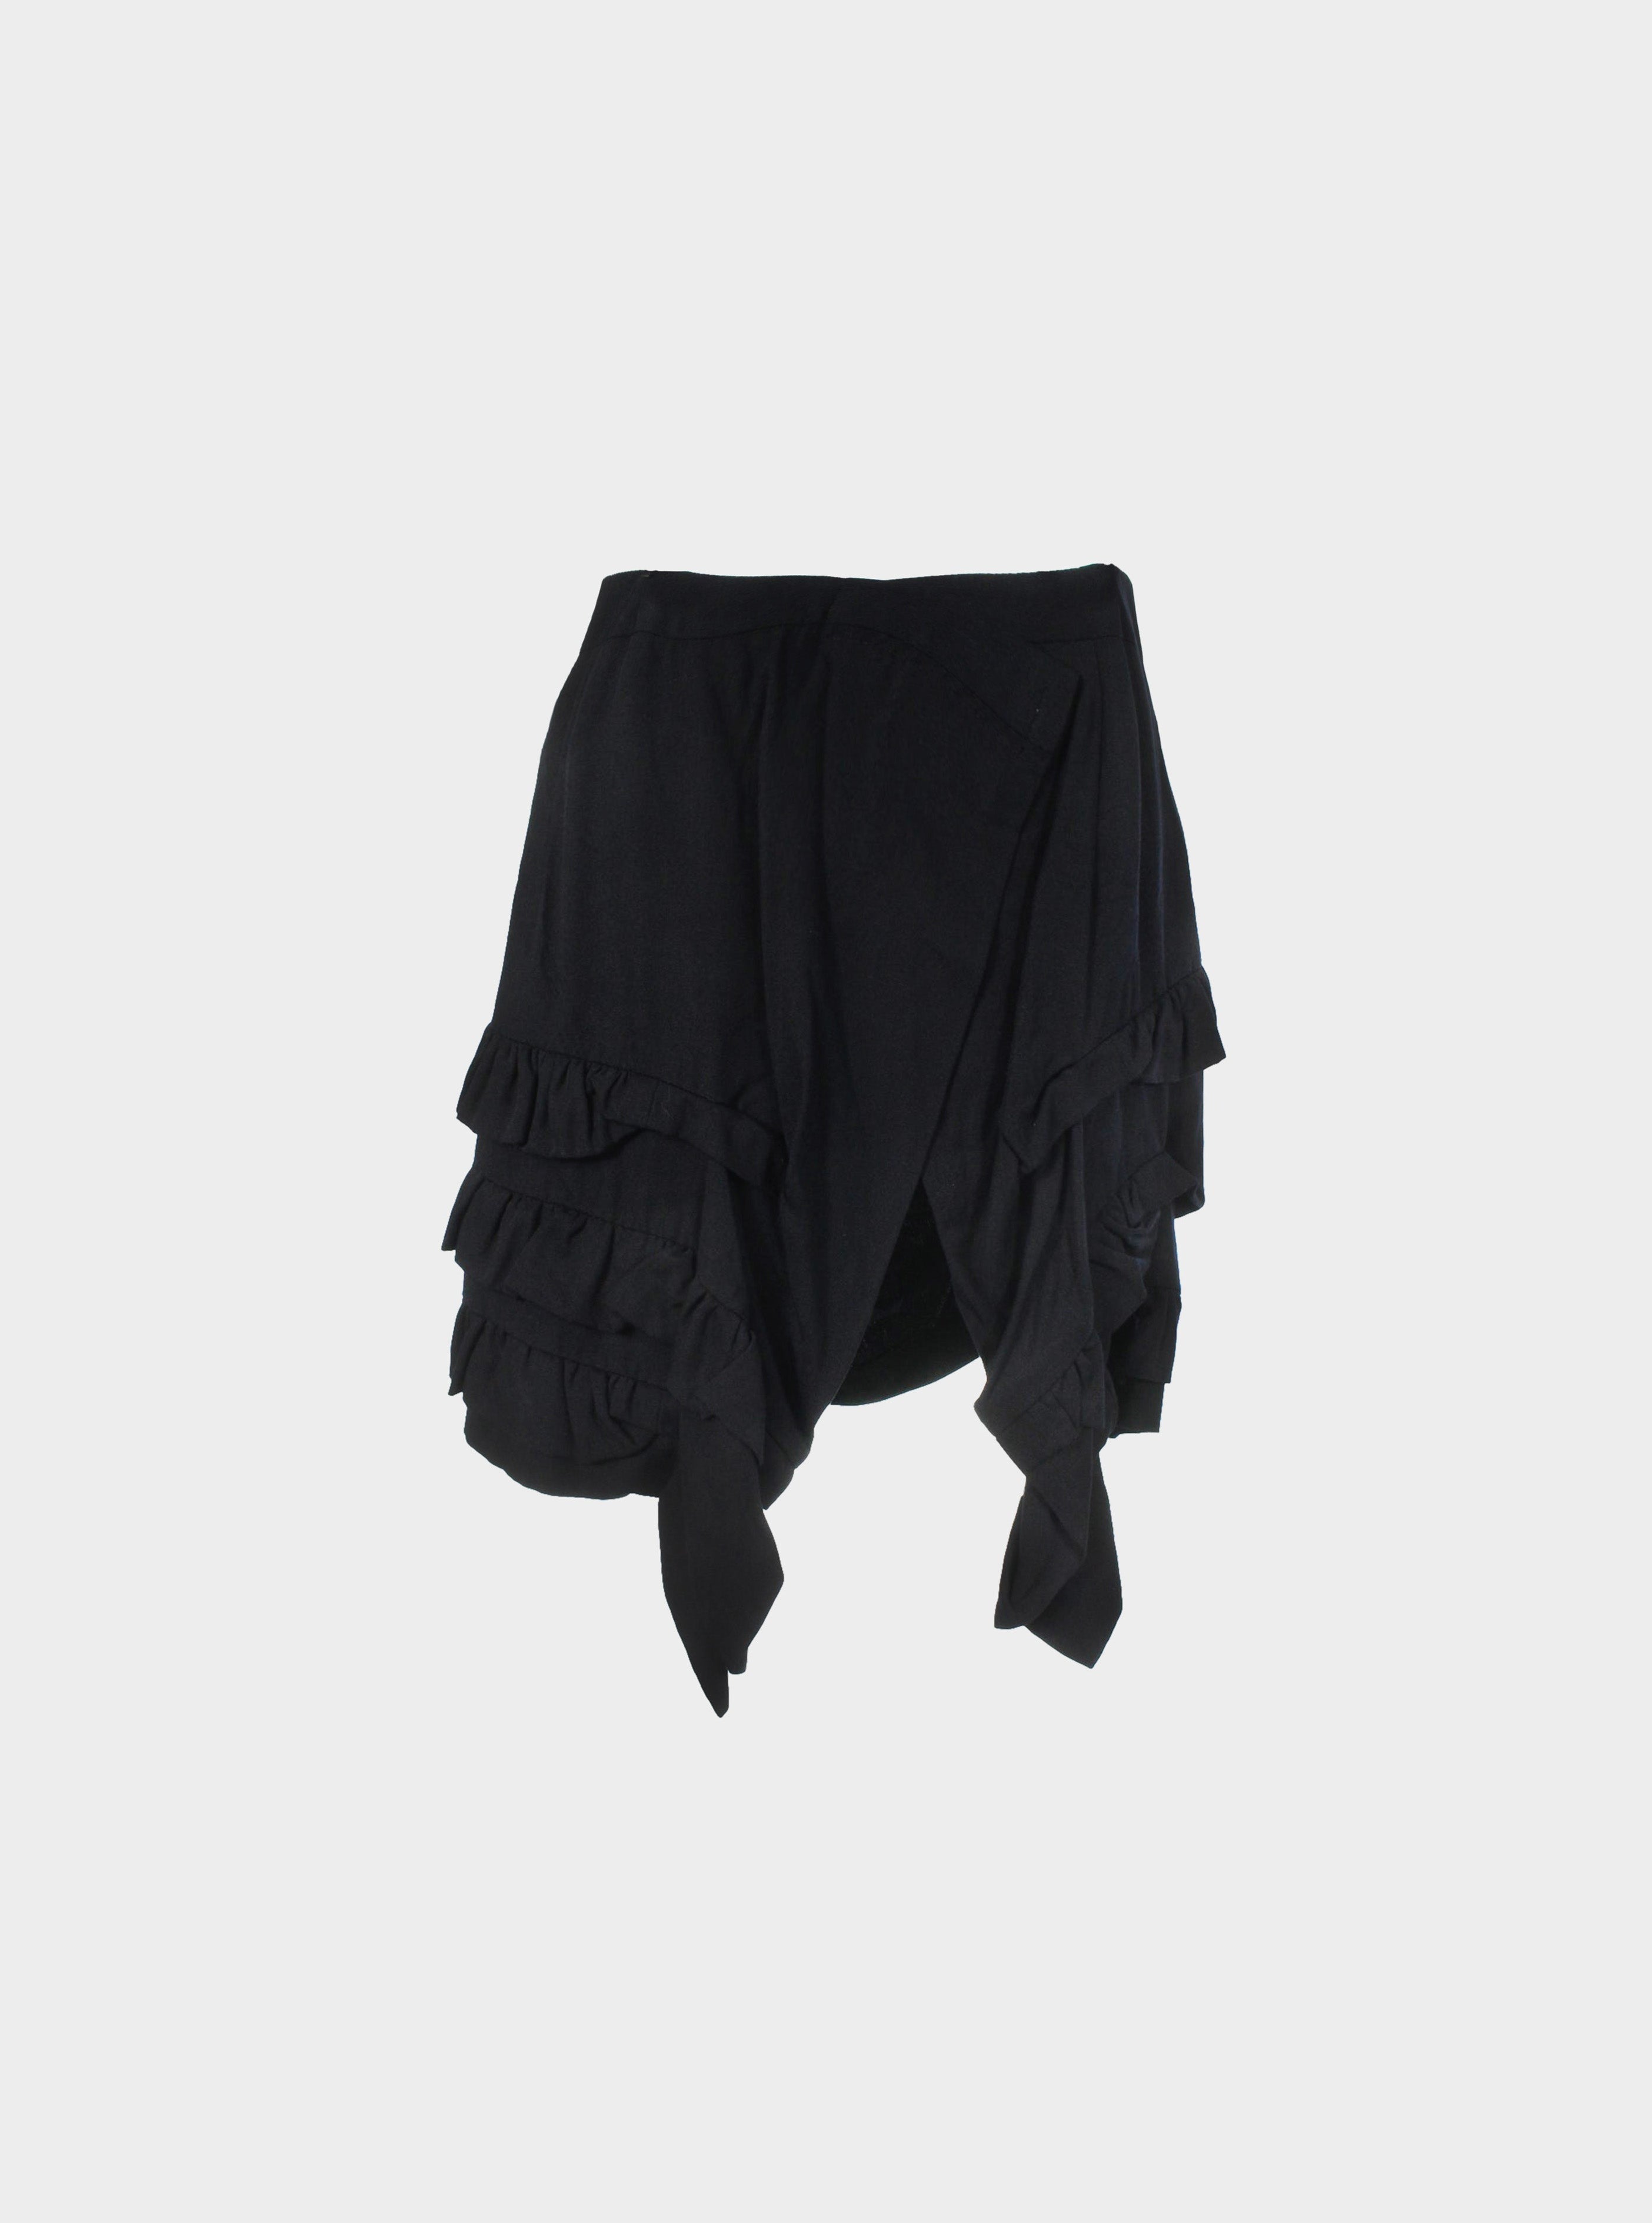 Comme des Garçons SS 1995 Black Ruffle Skirt